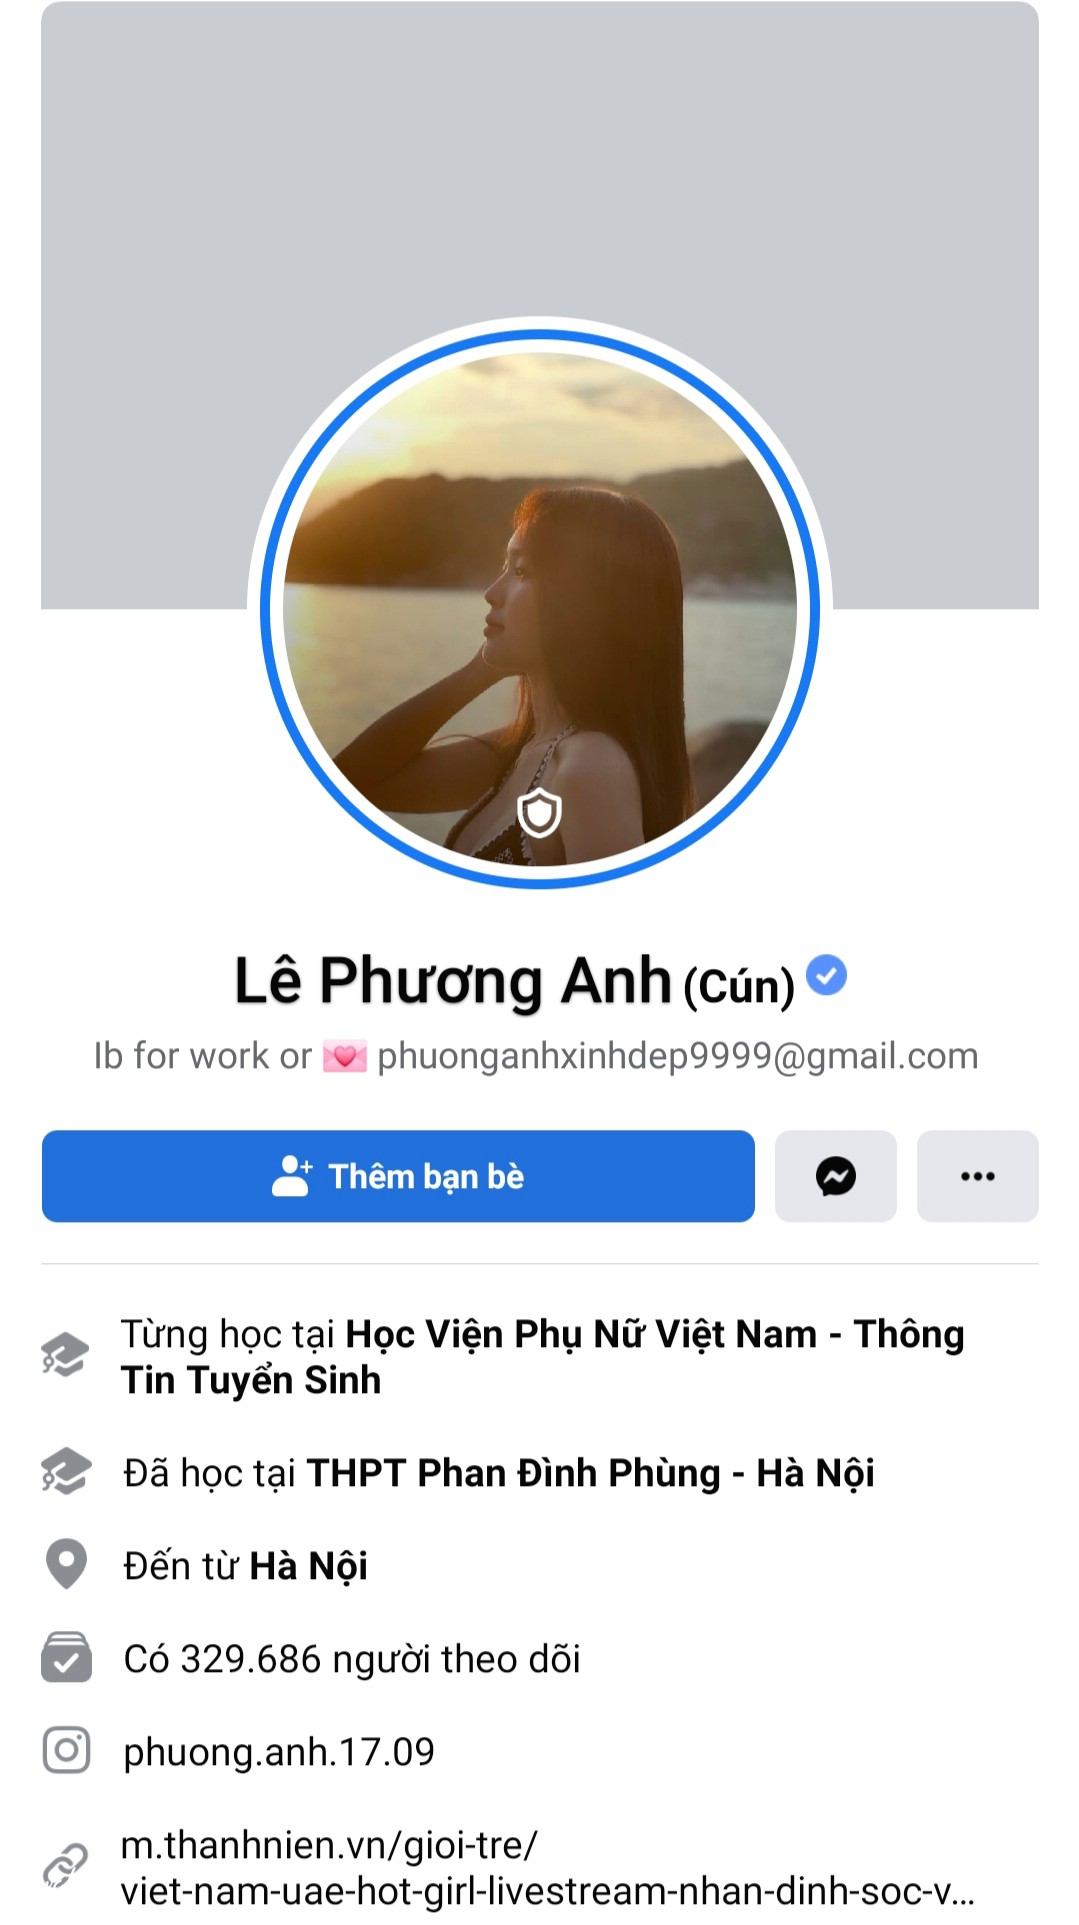 Facebook Le Phuong Anh